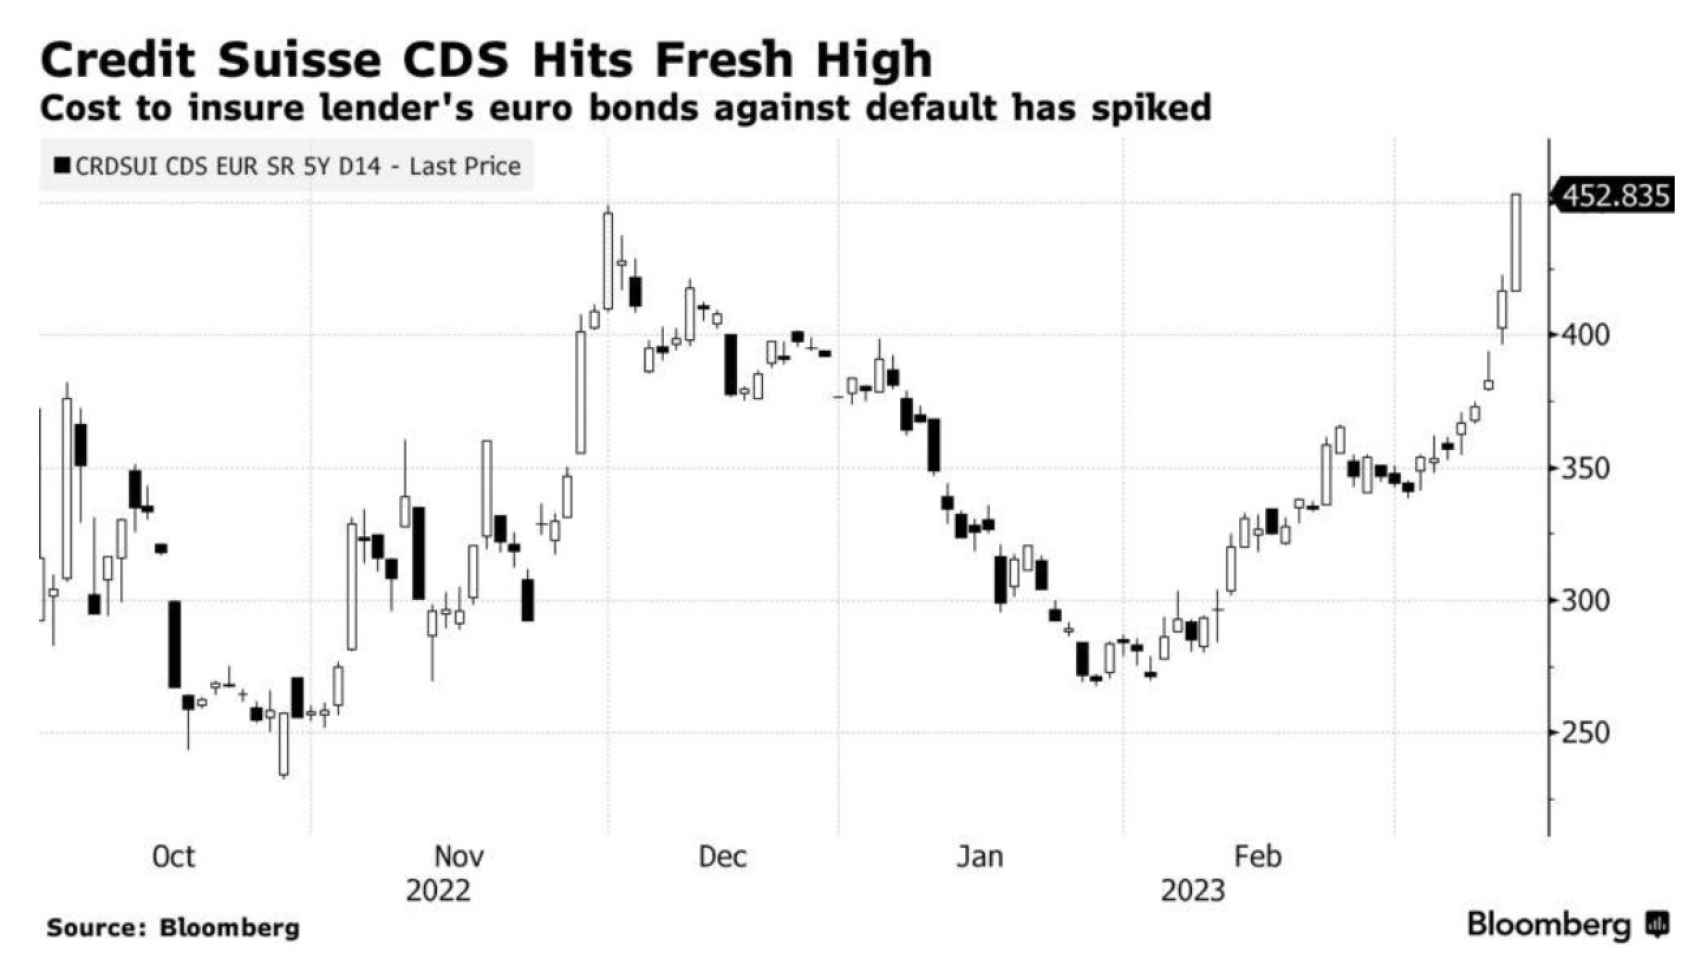 Evolution of Credit Suisse CDS.